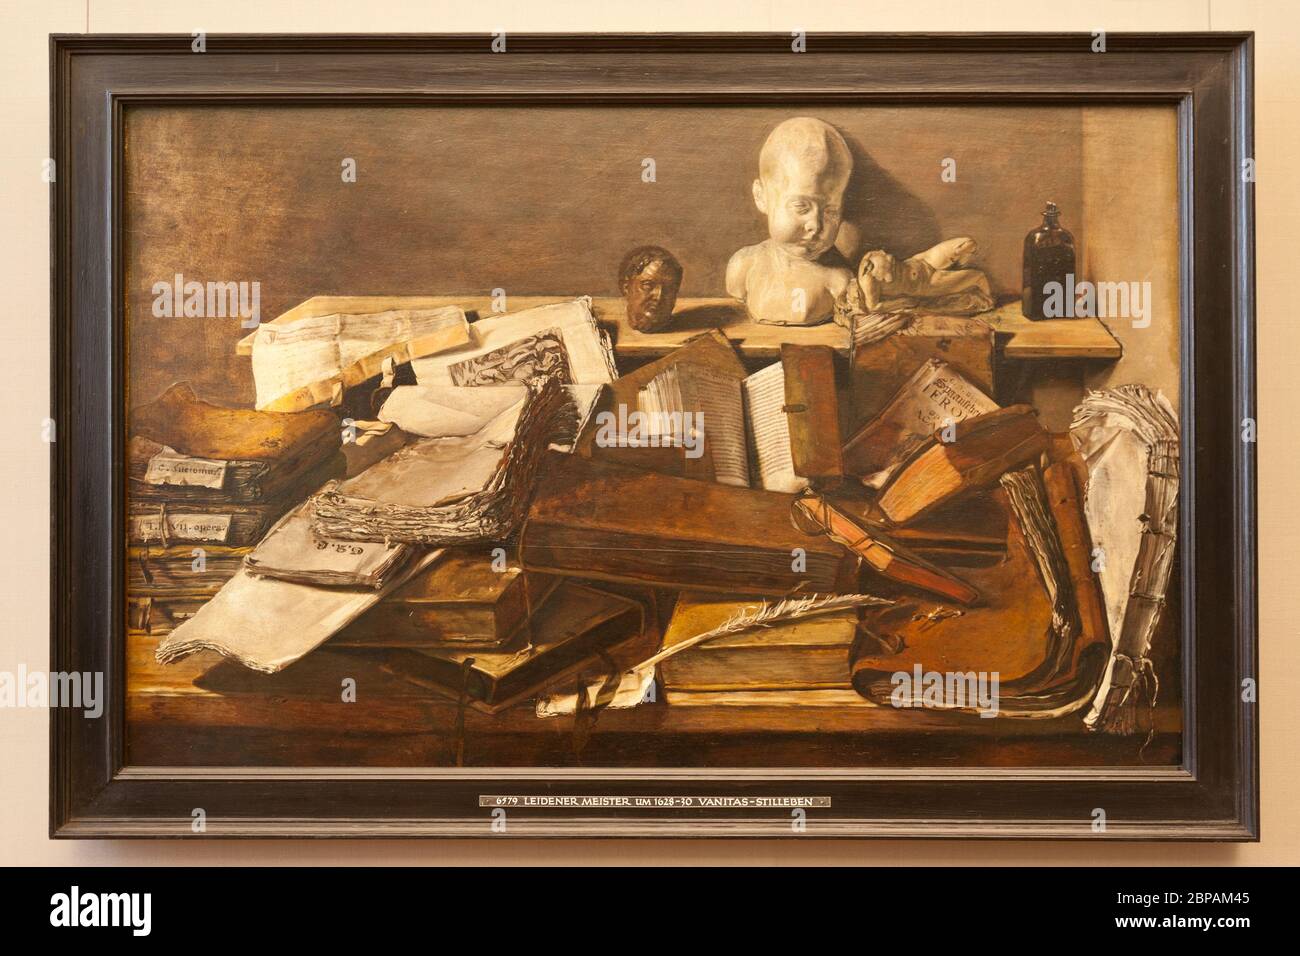 Tableau STILL Life de Leidener Meister dans la galerie Alte Pinakothek de Munich en Allemagne Banque D'Images